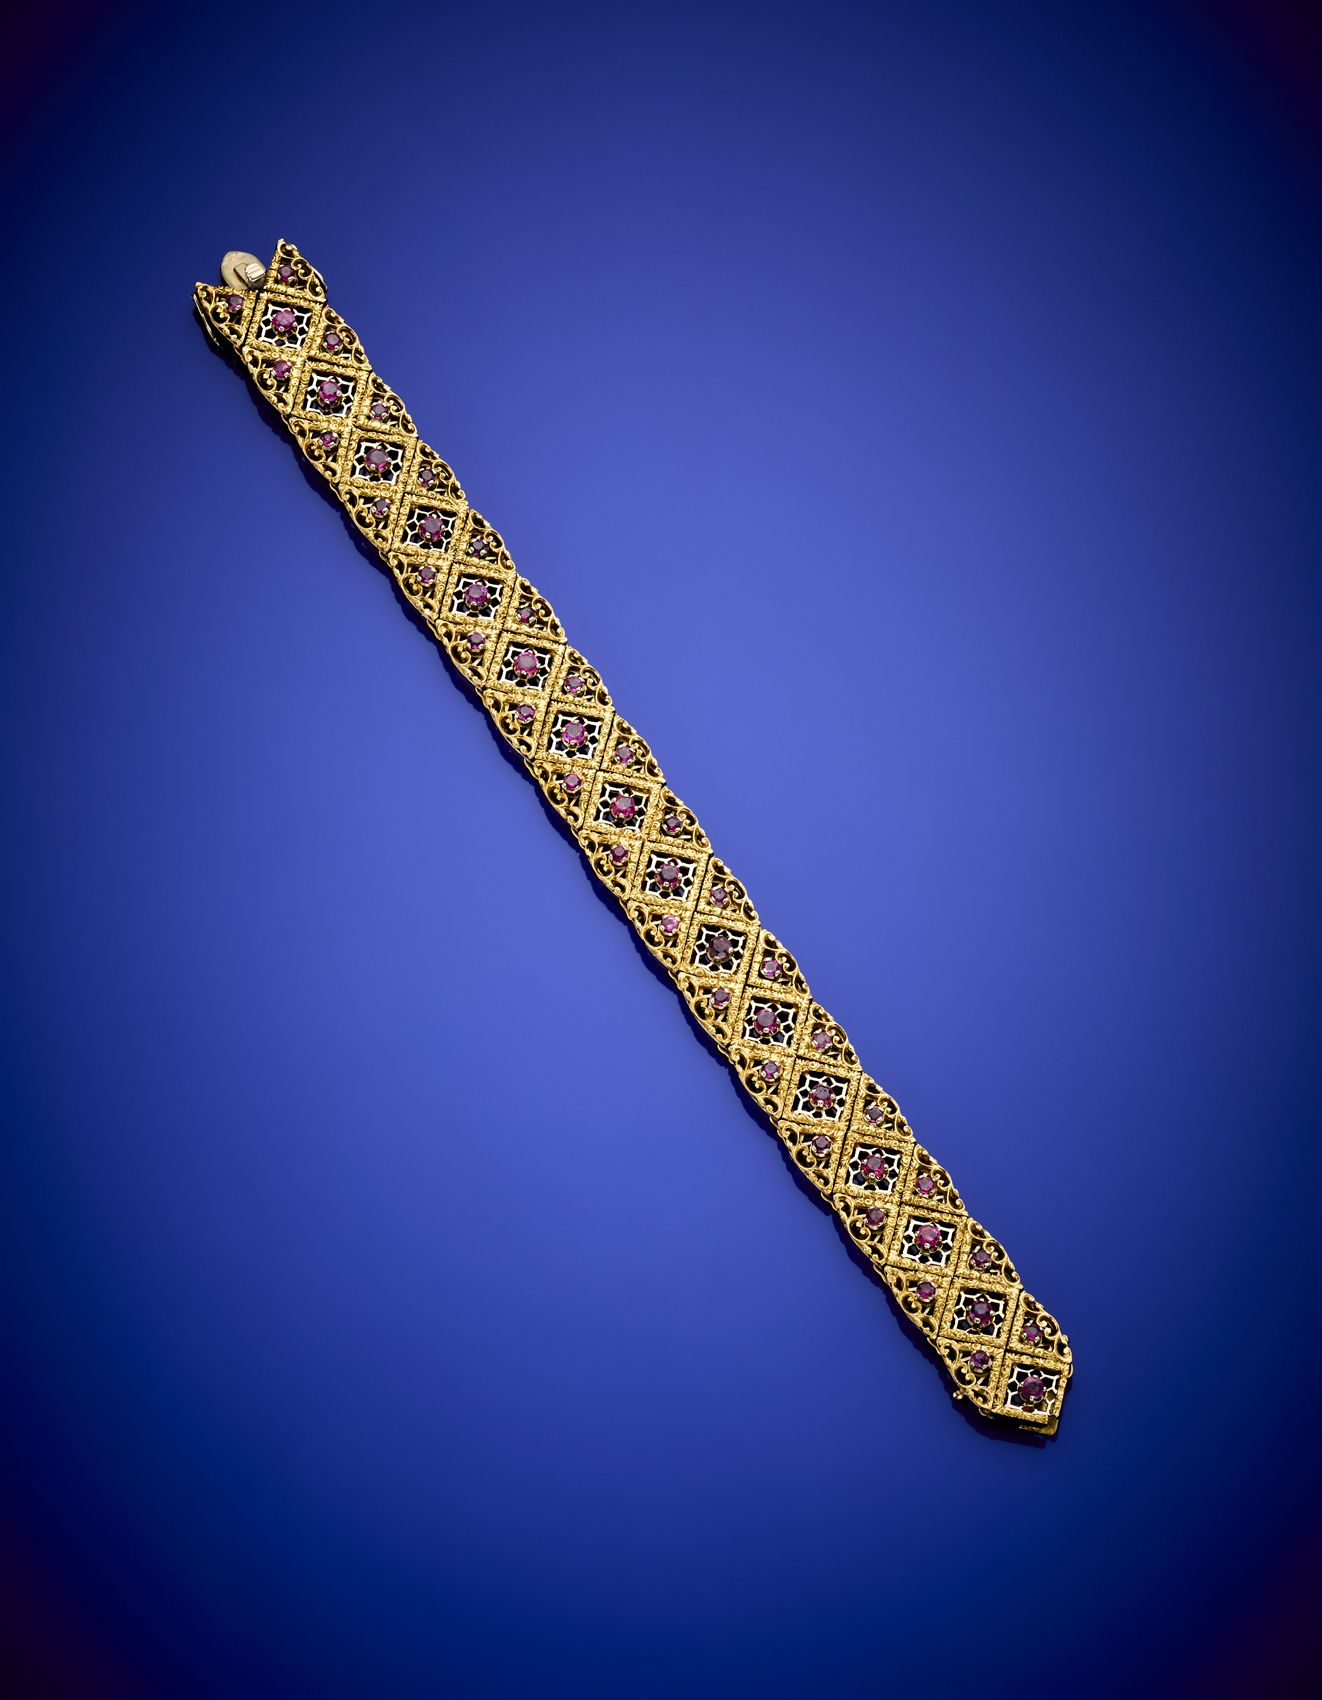 Null Buntgold-Rubinband-Armband, g 53,94 um, Länge cm 18,60, H cm 1,40 um. Gezei&hellip;